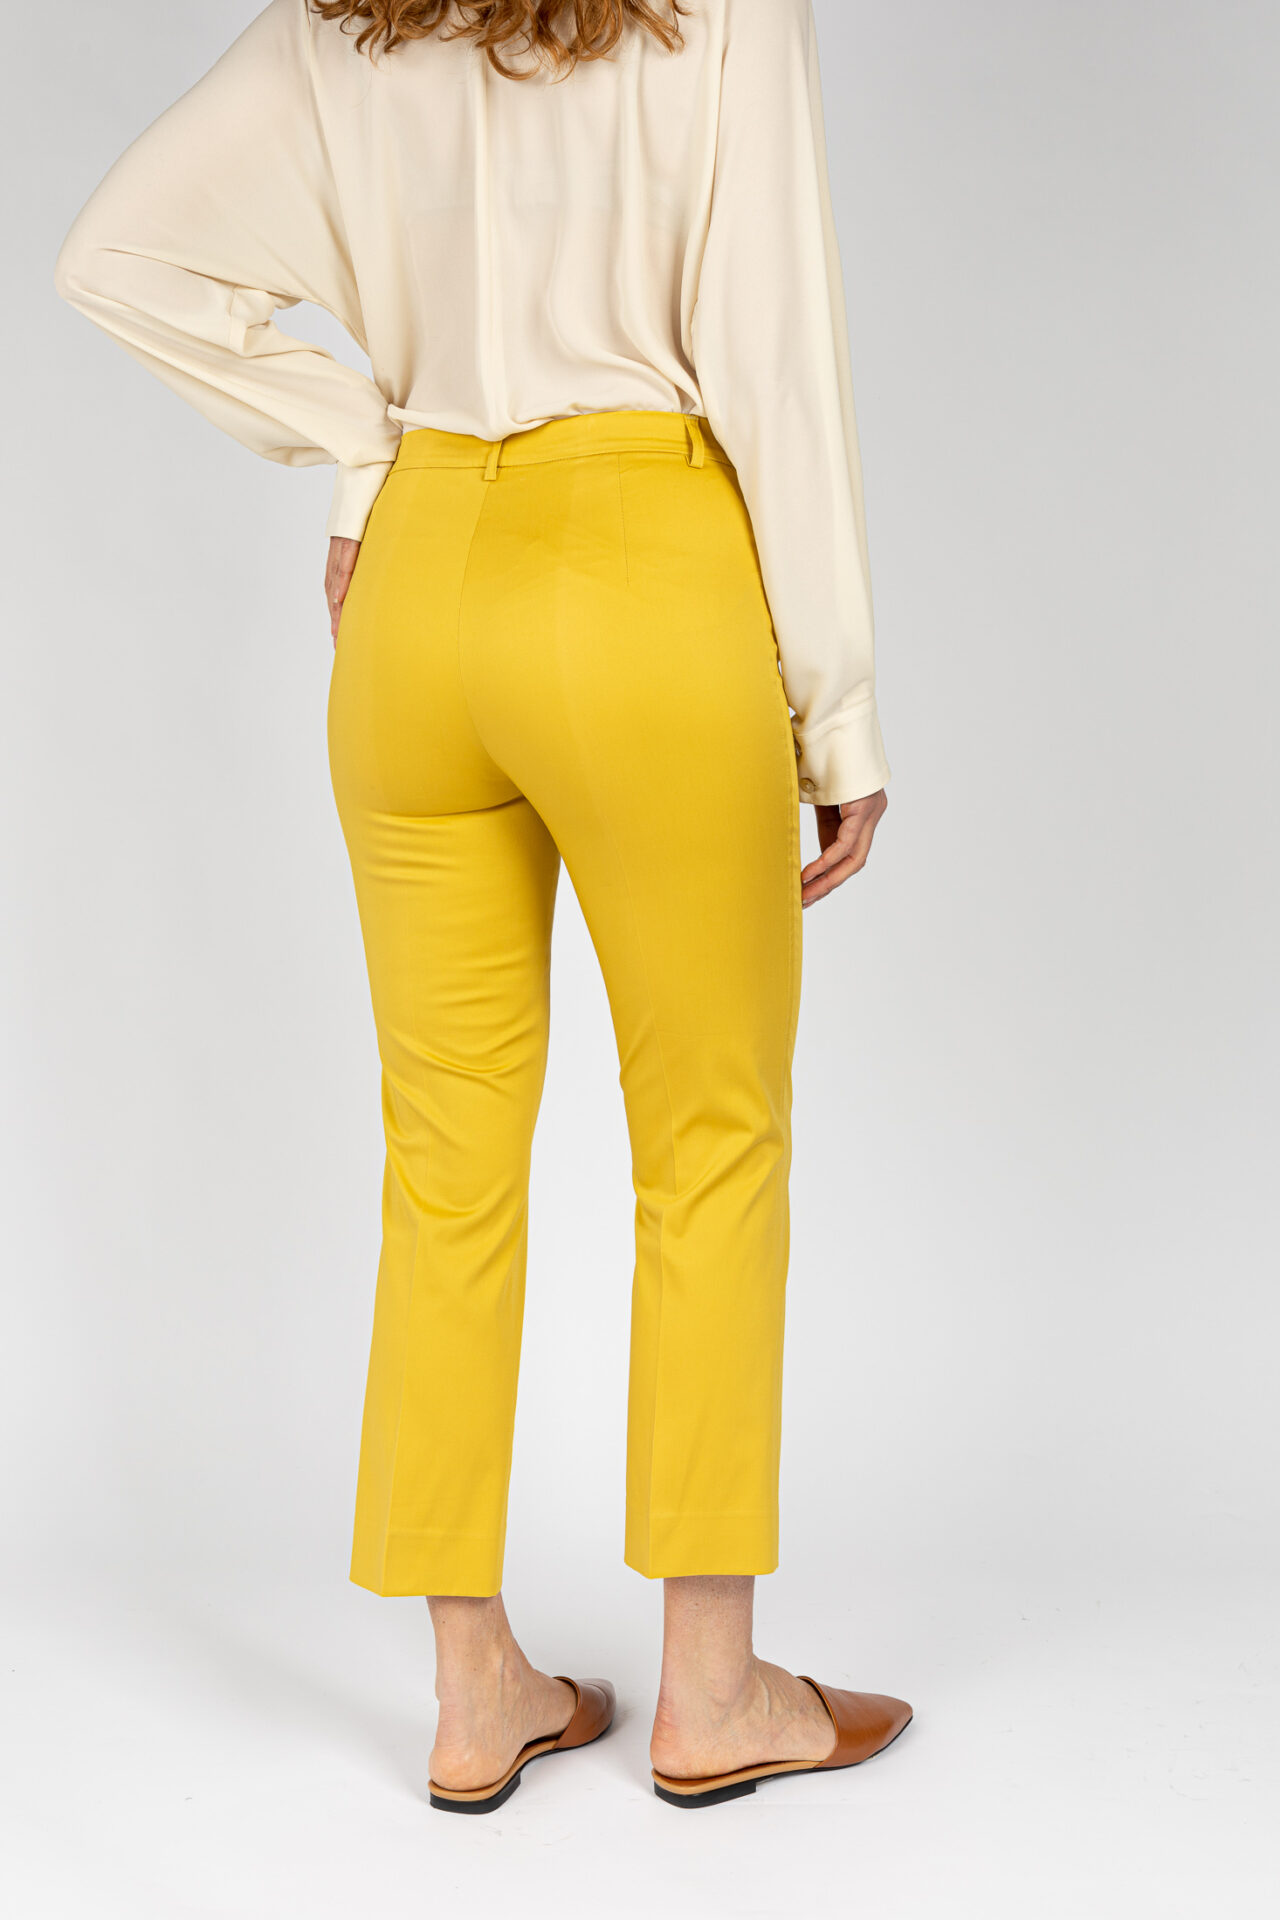 Pantaloni gamba corta fondo leggermente svasato, da donna in colore lime P19668H - 5